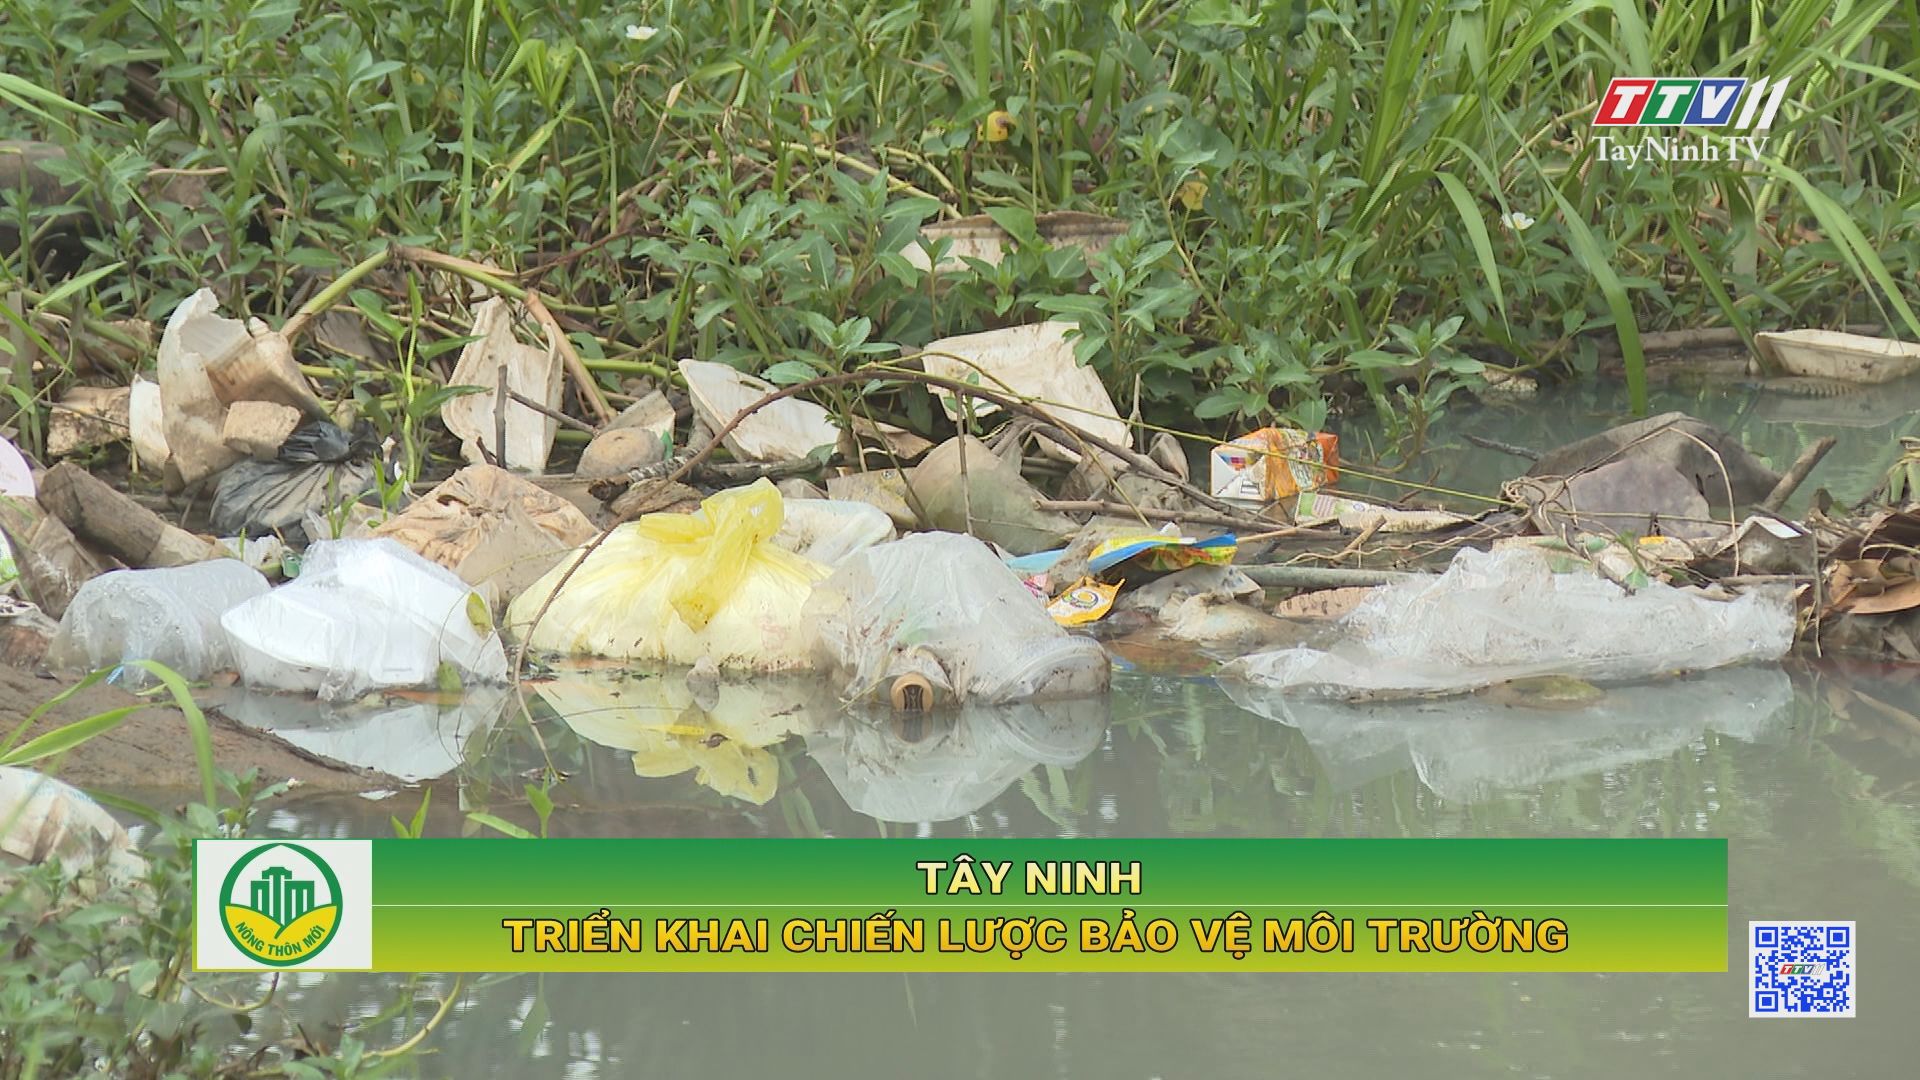 Tây Ninh triển khai Chiến lược bảo vệ môi trường | Tây Ninh xây dựng nông thôn mới | TayNinhTV